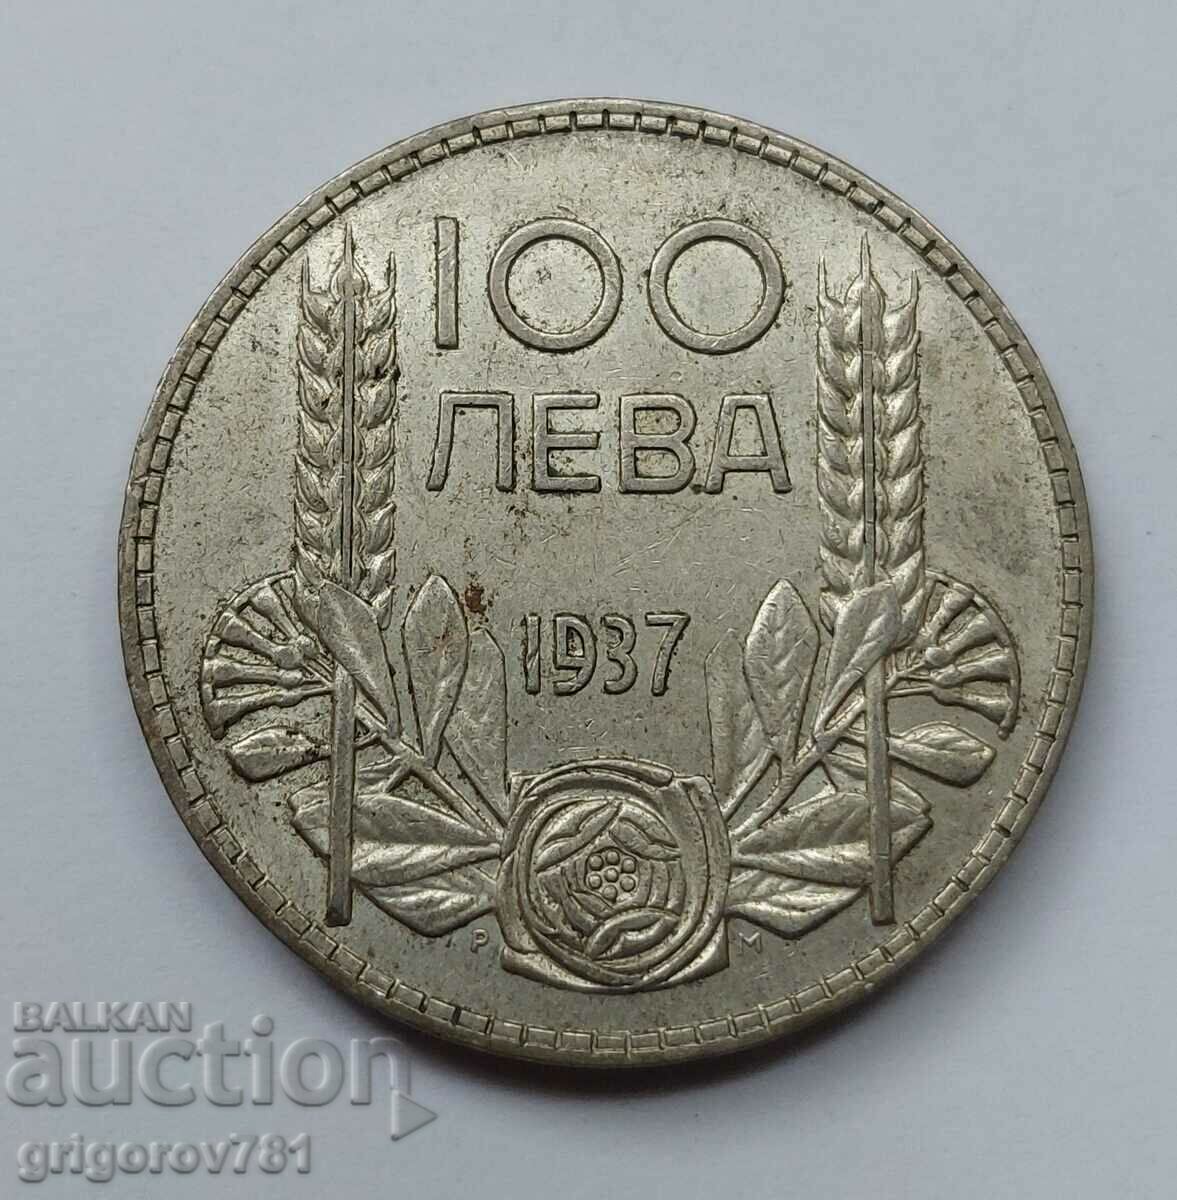 100 leva silver Bulgaria 1937 - silver coin #15